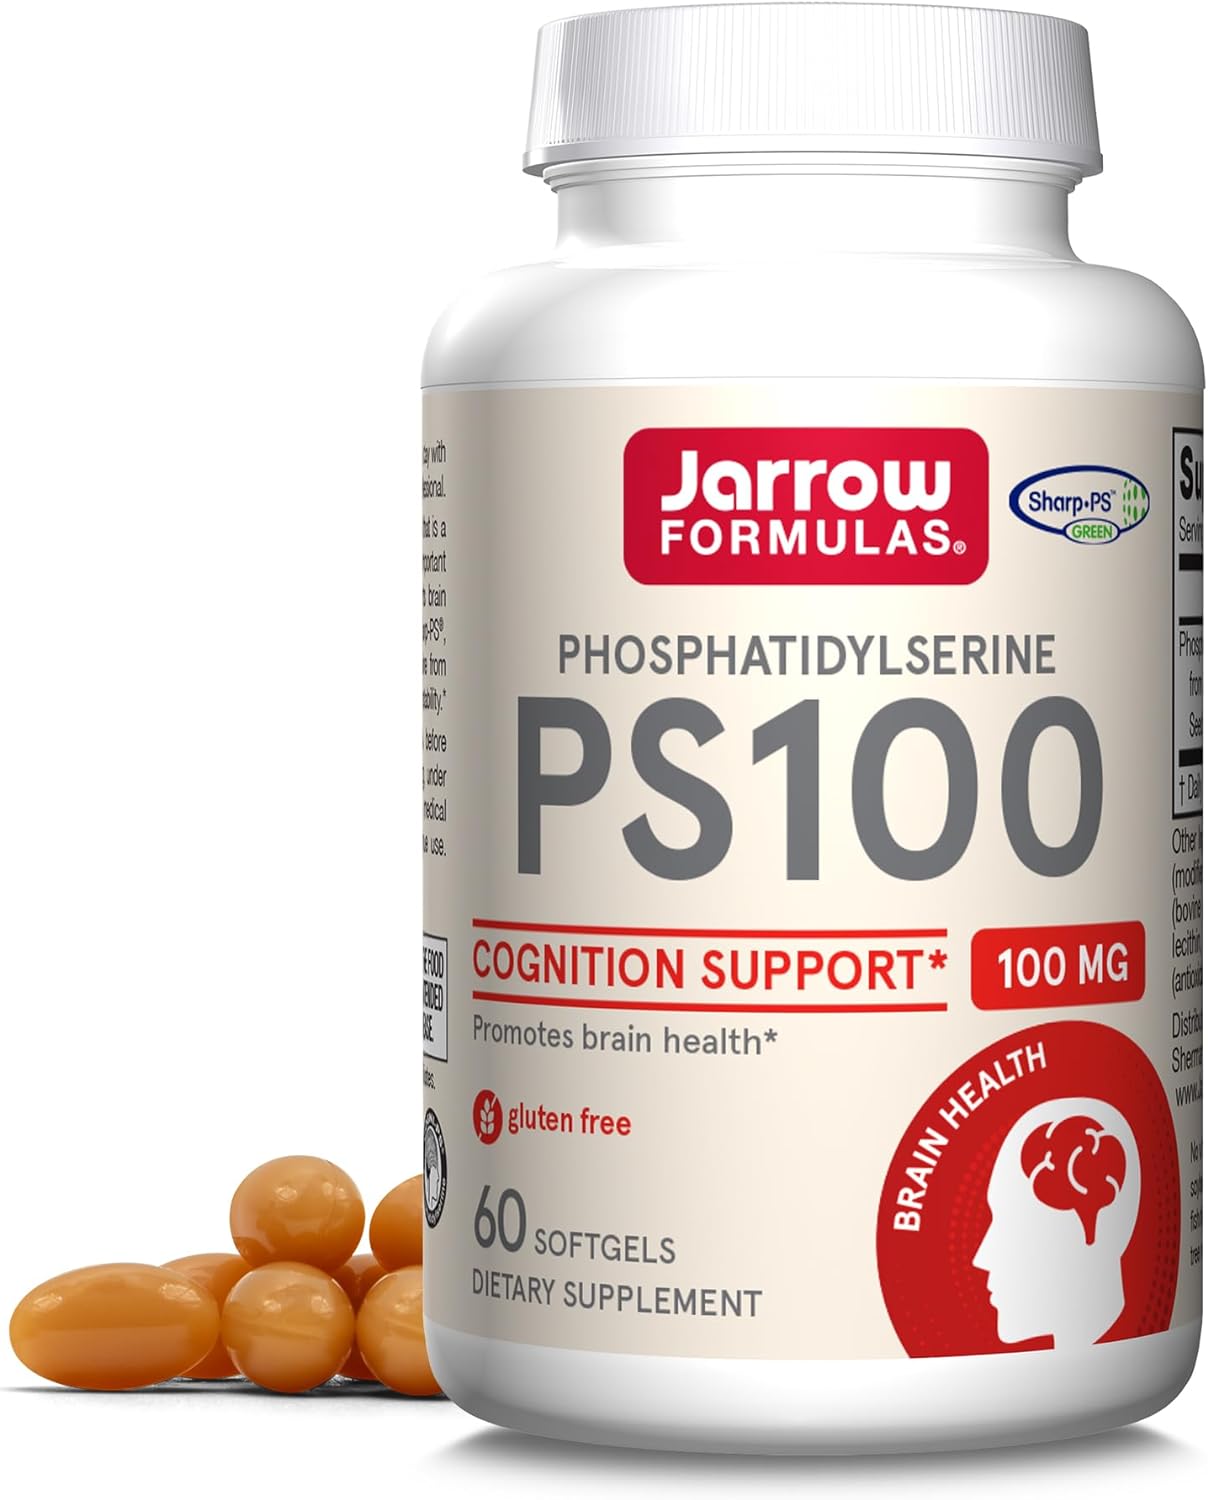 Jarrow Formulas PS 100-60 Softgels - 100 mg Phosphatidylserine (PS) - Cognition Support